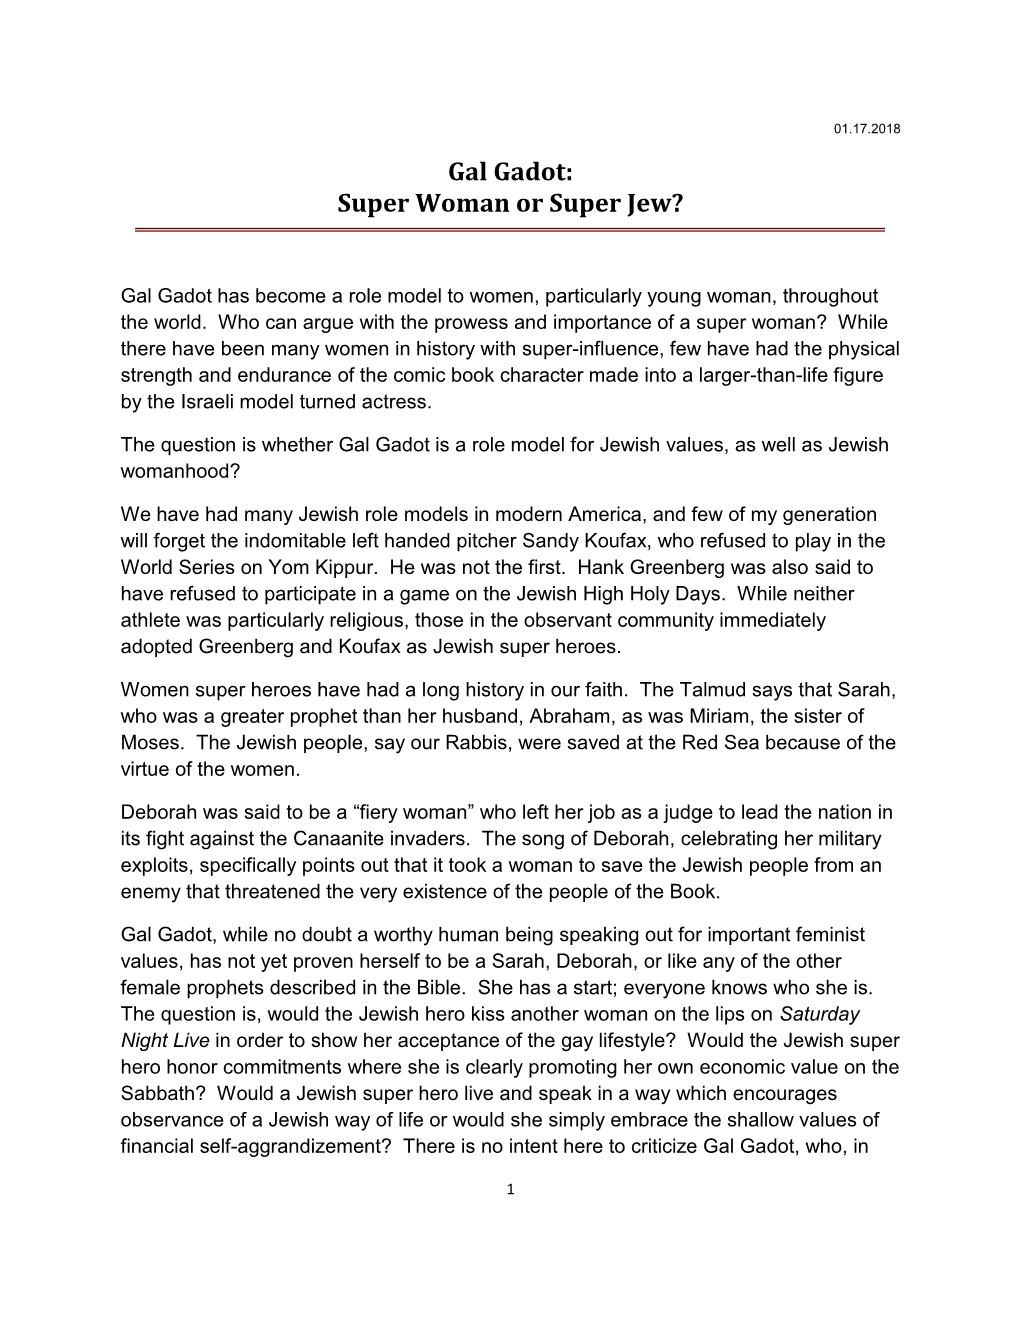 Gal Gadot: Super Woman Or Super Jew?